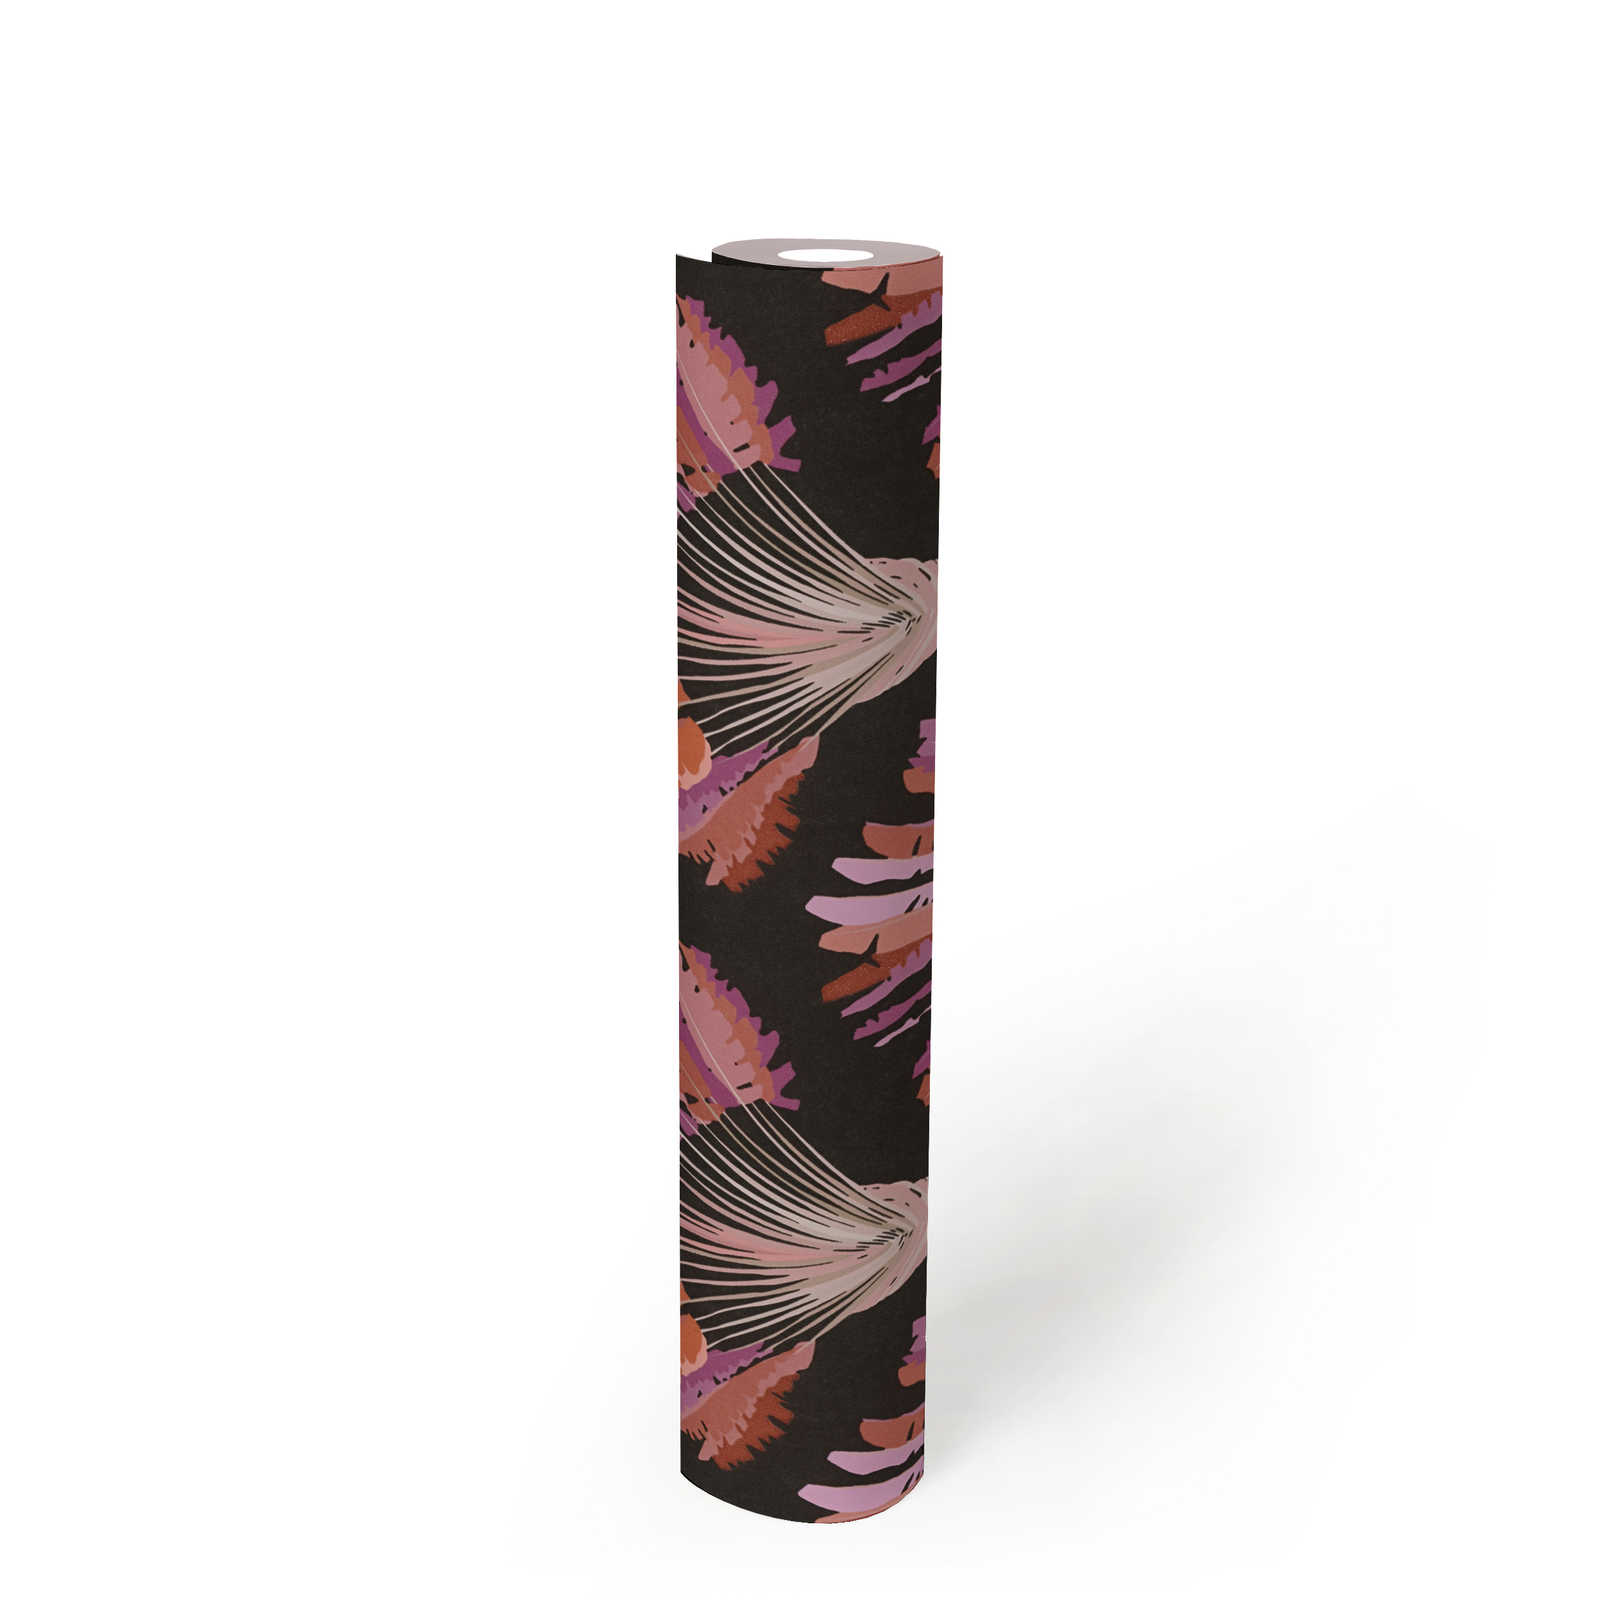             Zwart behang met paars palmmotief
        